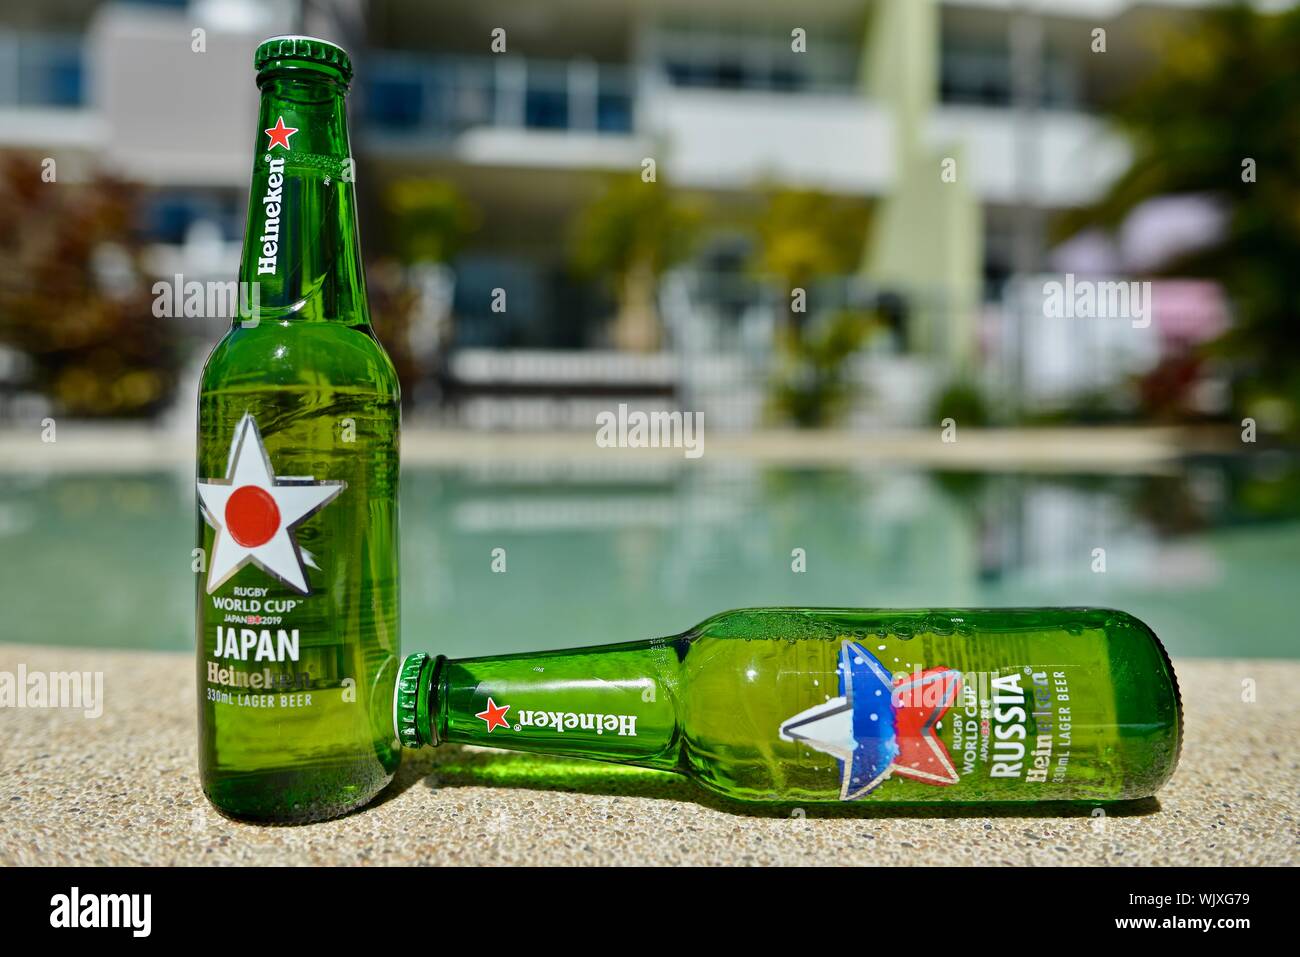 Japan versus Russia, Japan wins, Heineken 2019 Japan Rugby world cup beer bottles Stock Photo